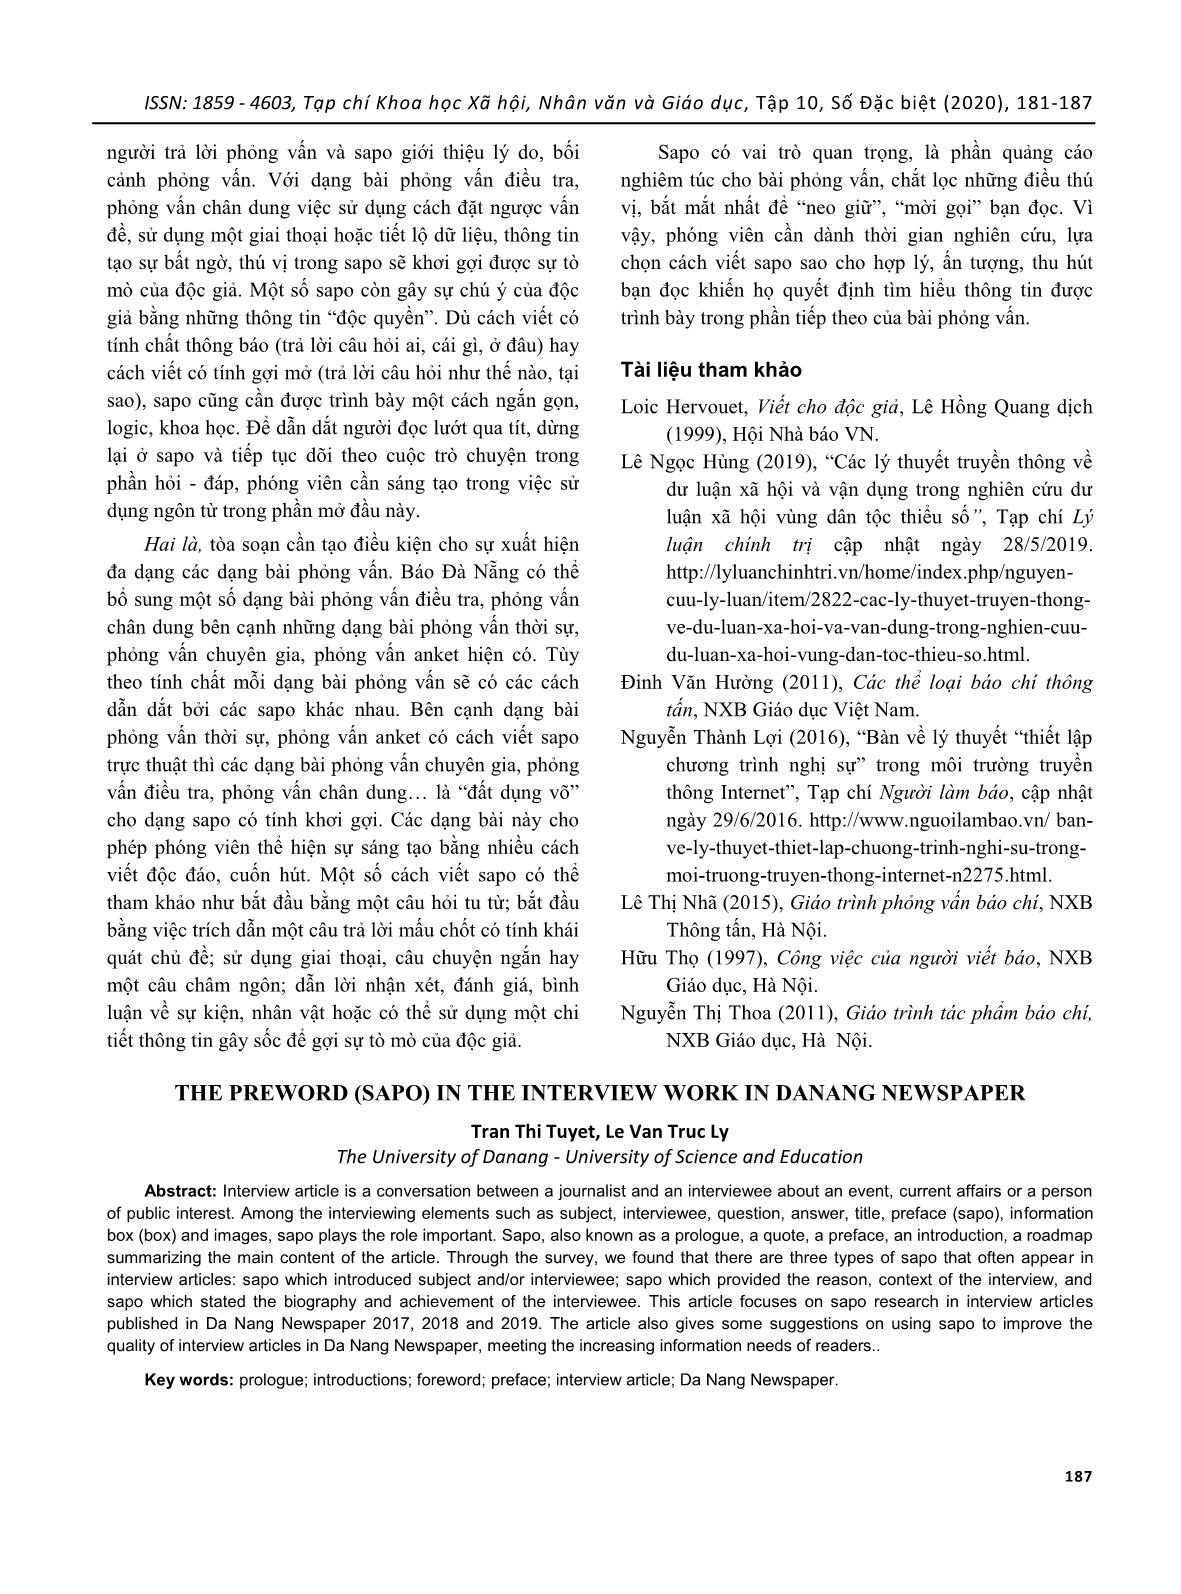 Lời mở đầu (sapo) trong tác phẩm phỏng vấn trên báo Đà Nẵng trang 7